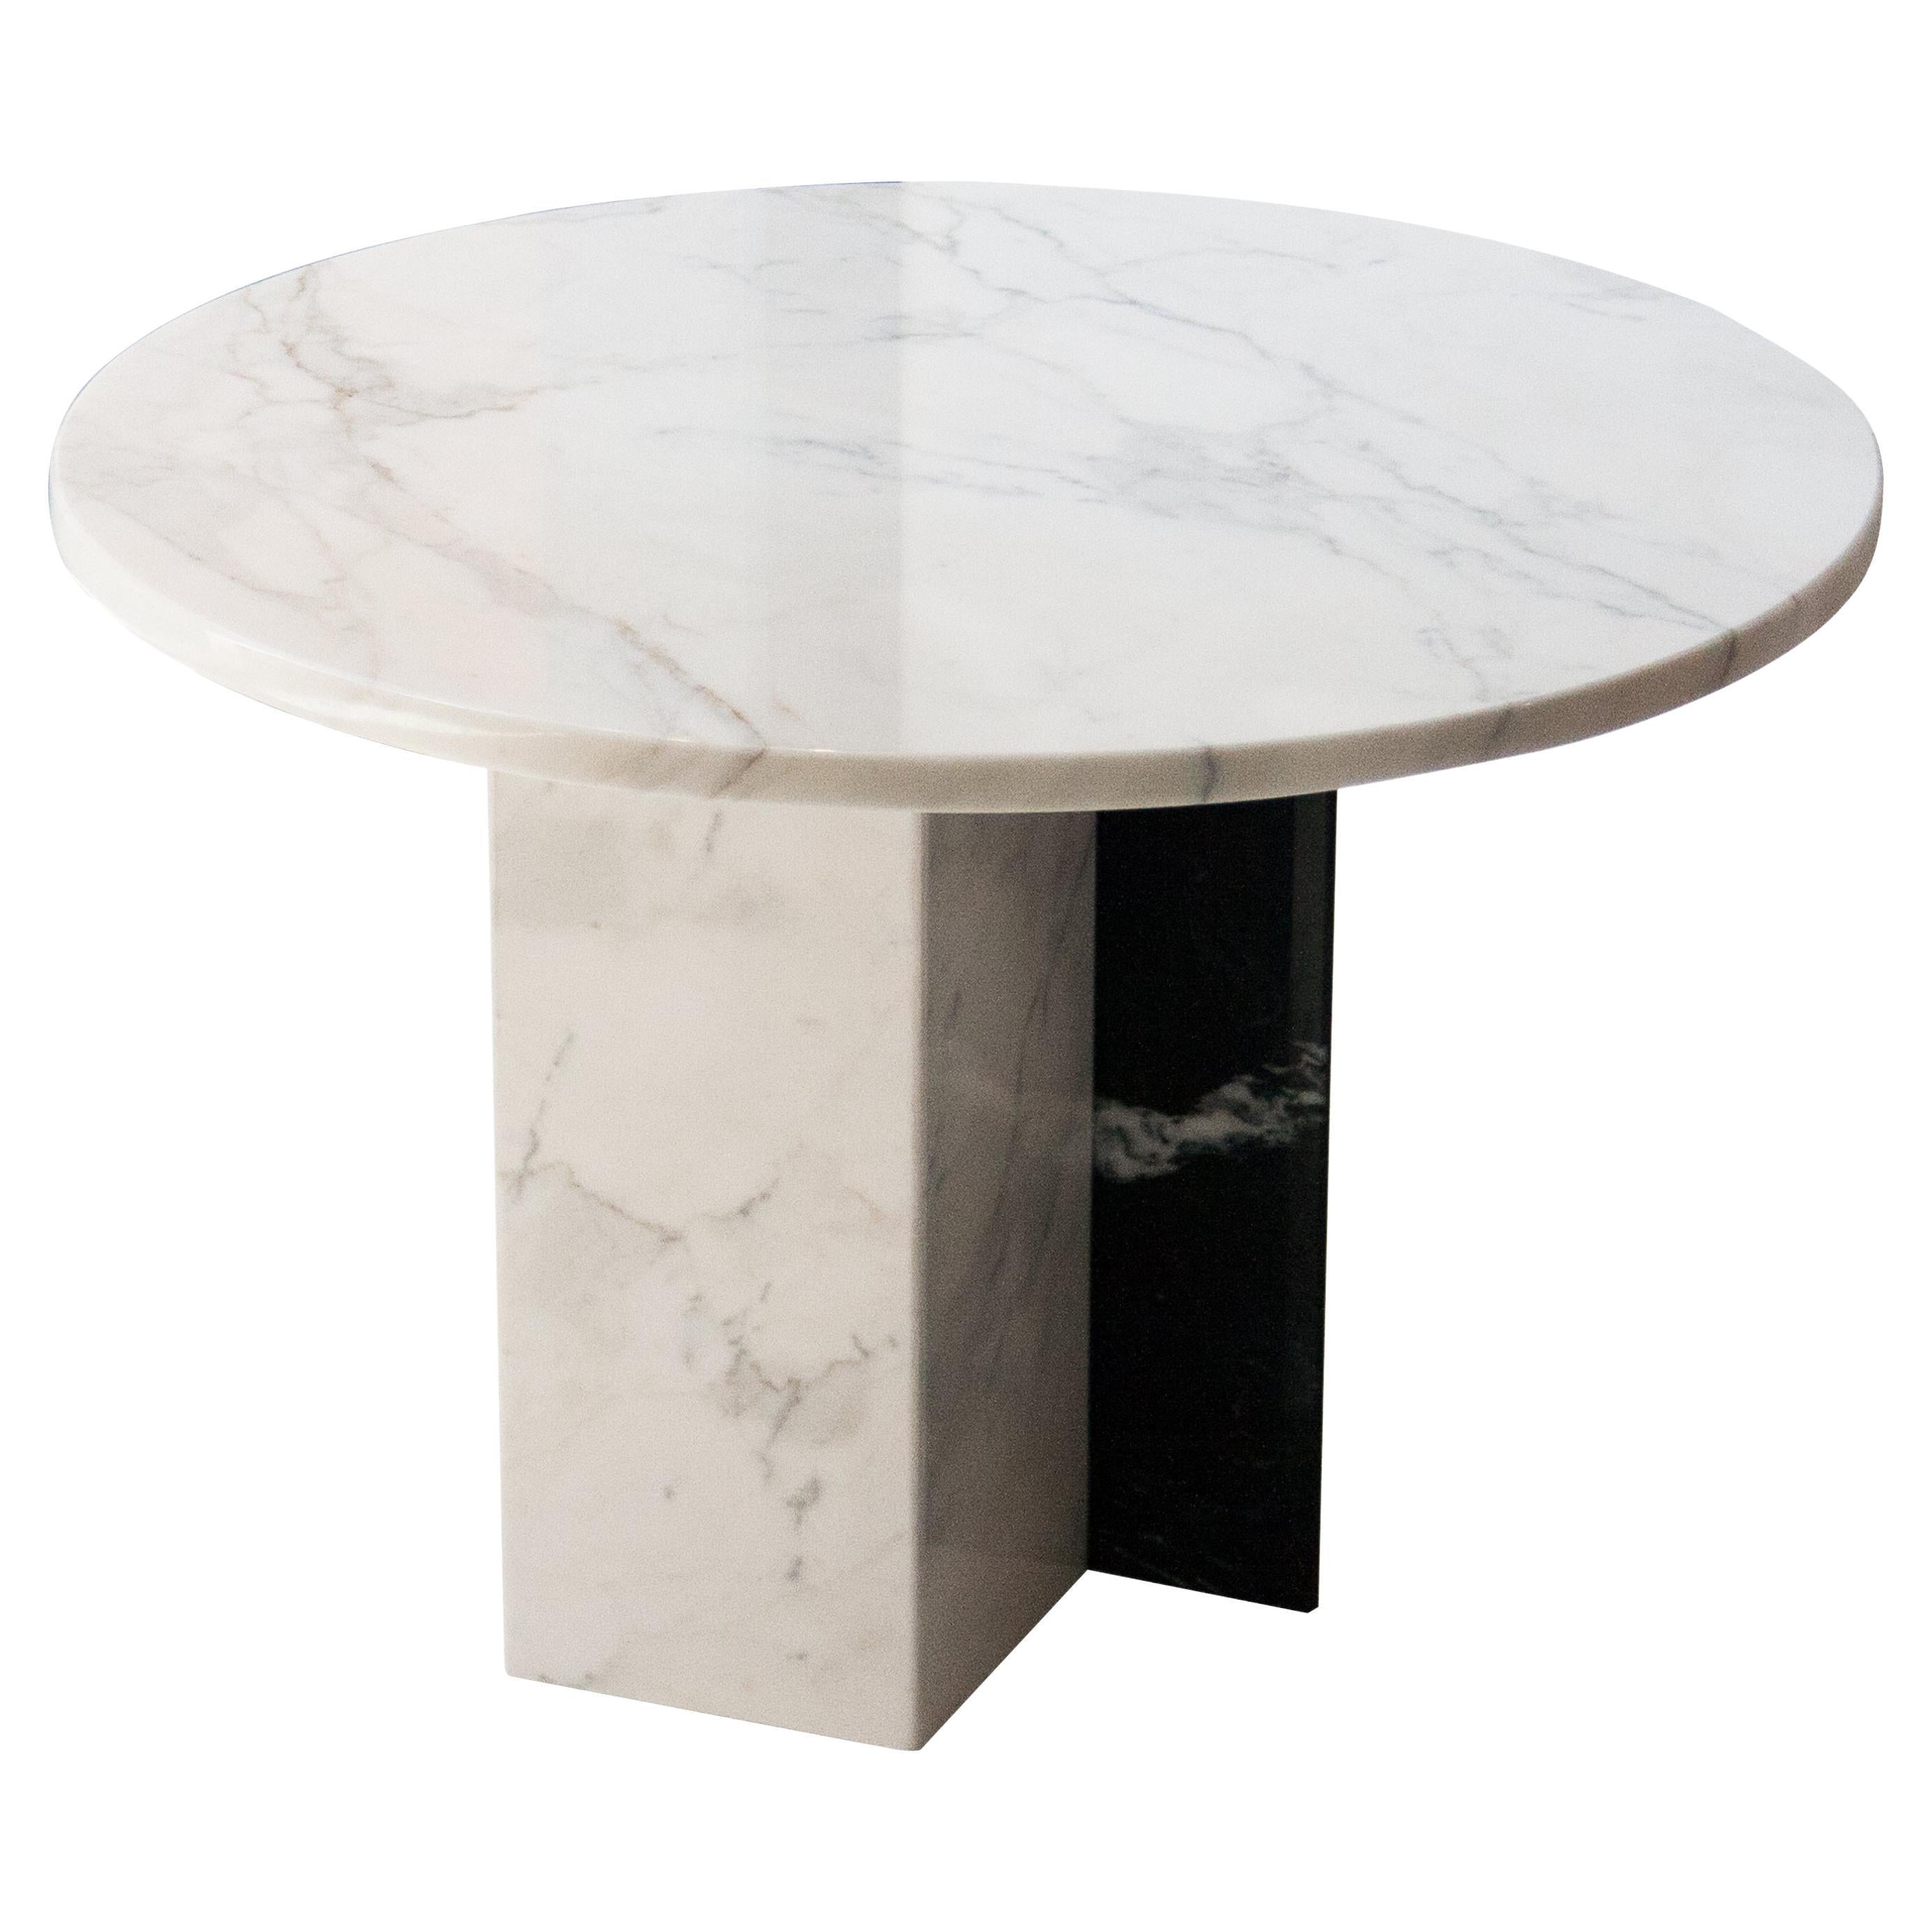 Table basse ronde contemporaine en marbre conçue par IKB191, Espagne, 2022